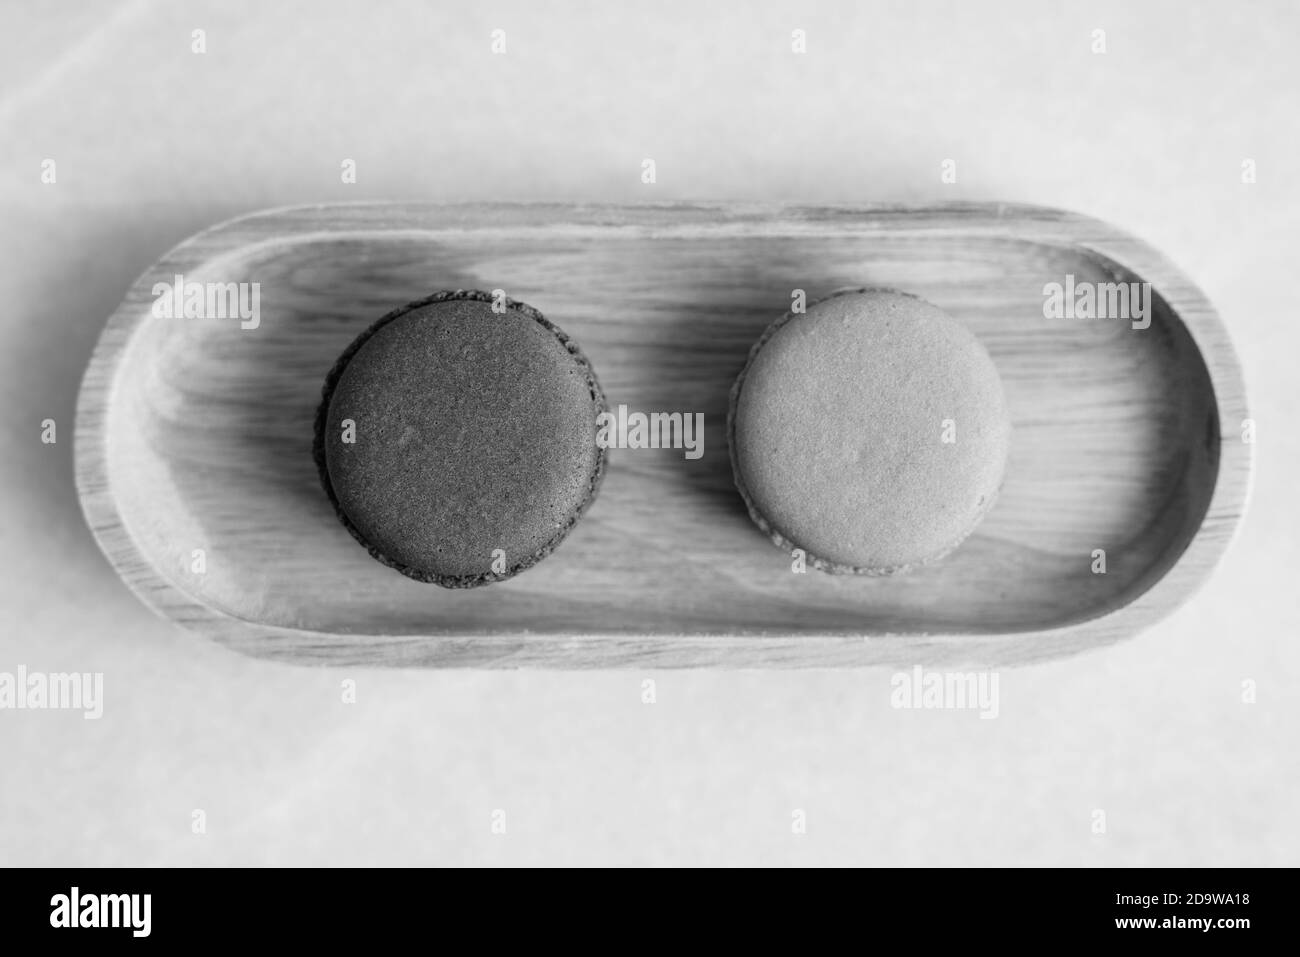 Deux macarons servis sur Table Shot en noir et blanc Banque D'Images